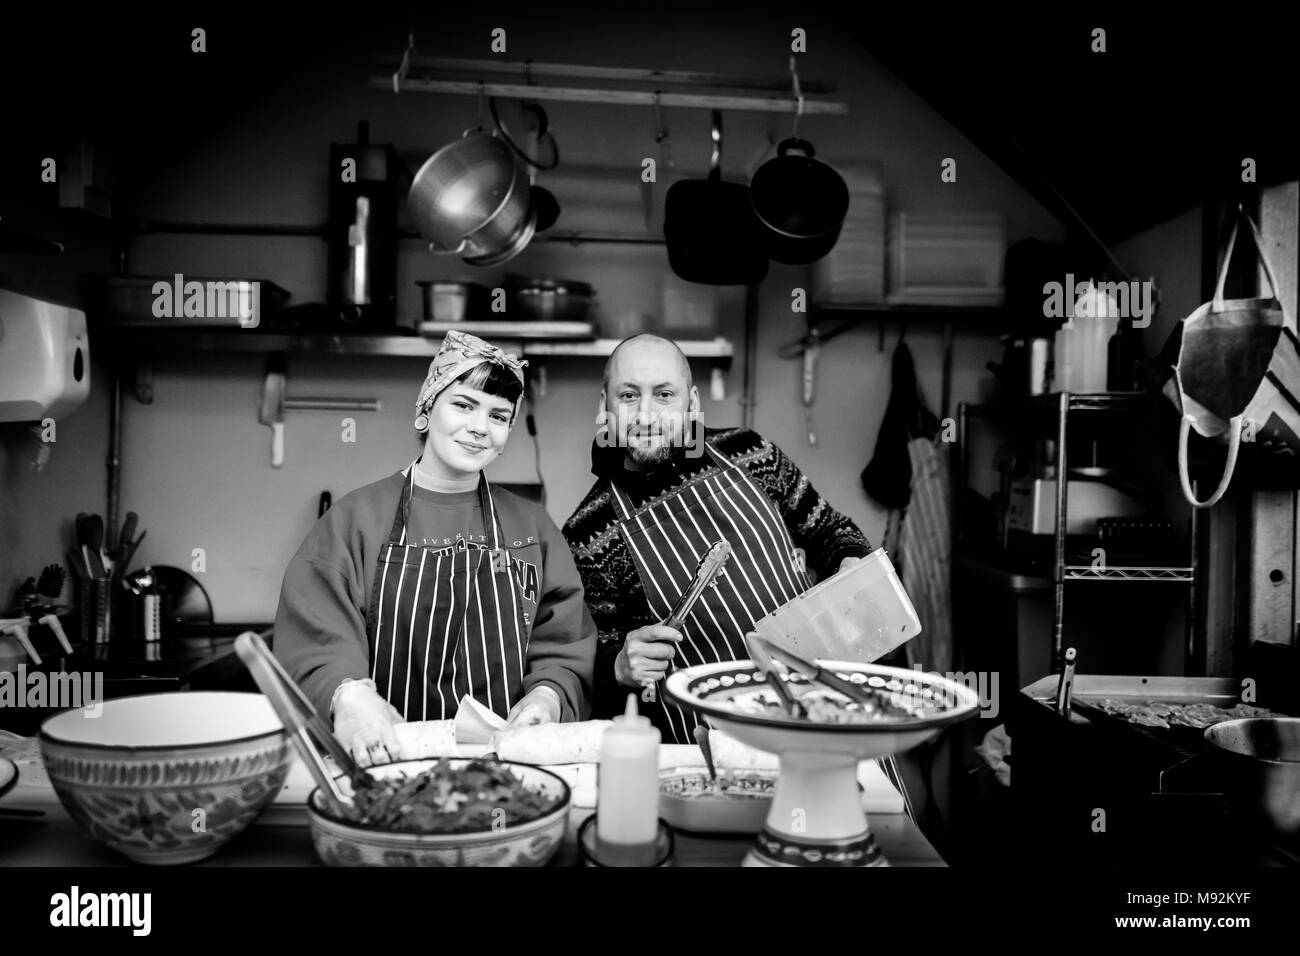 Il Caos, York il 16 febbraio 2018. La donna in una testa sciarpa e maschile chef in un grembiule su un cibo caldo stand, in stallo o in cucina in posa per la fotocamera Foto Stock